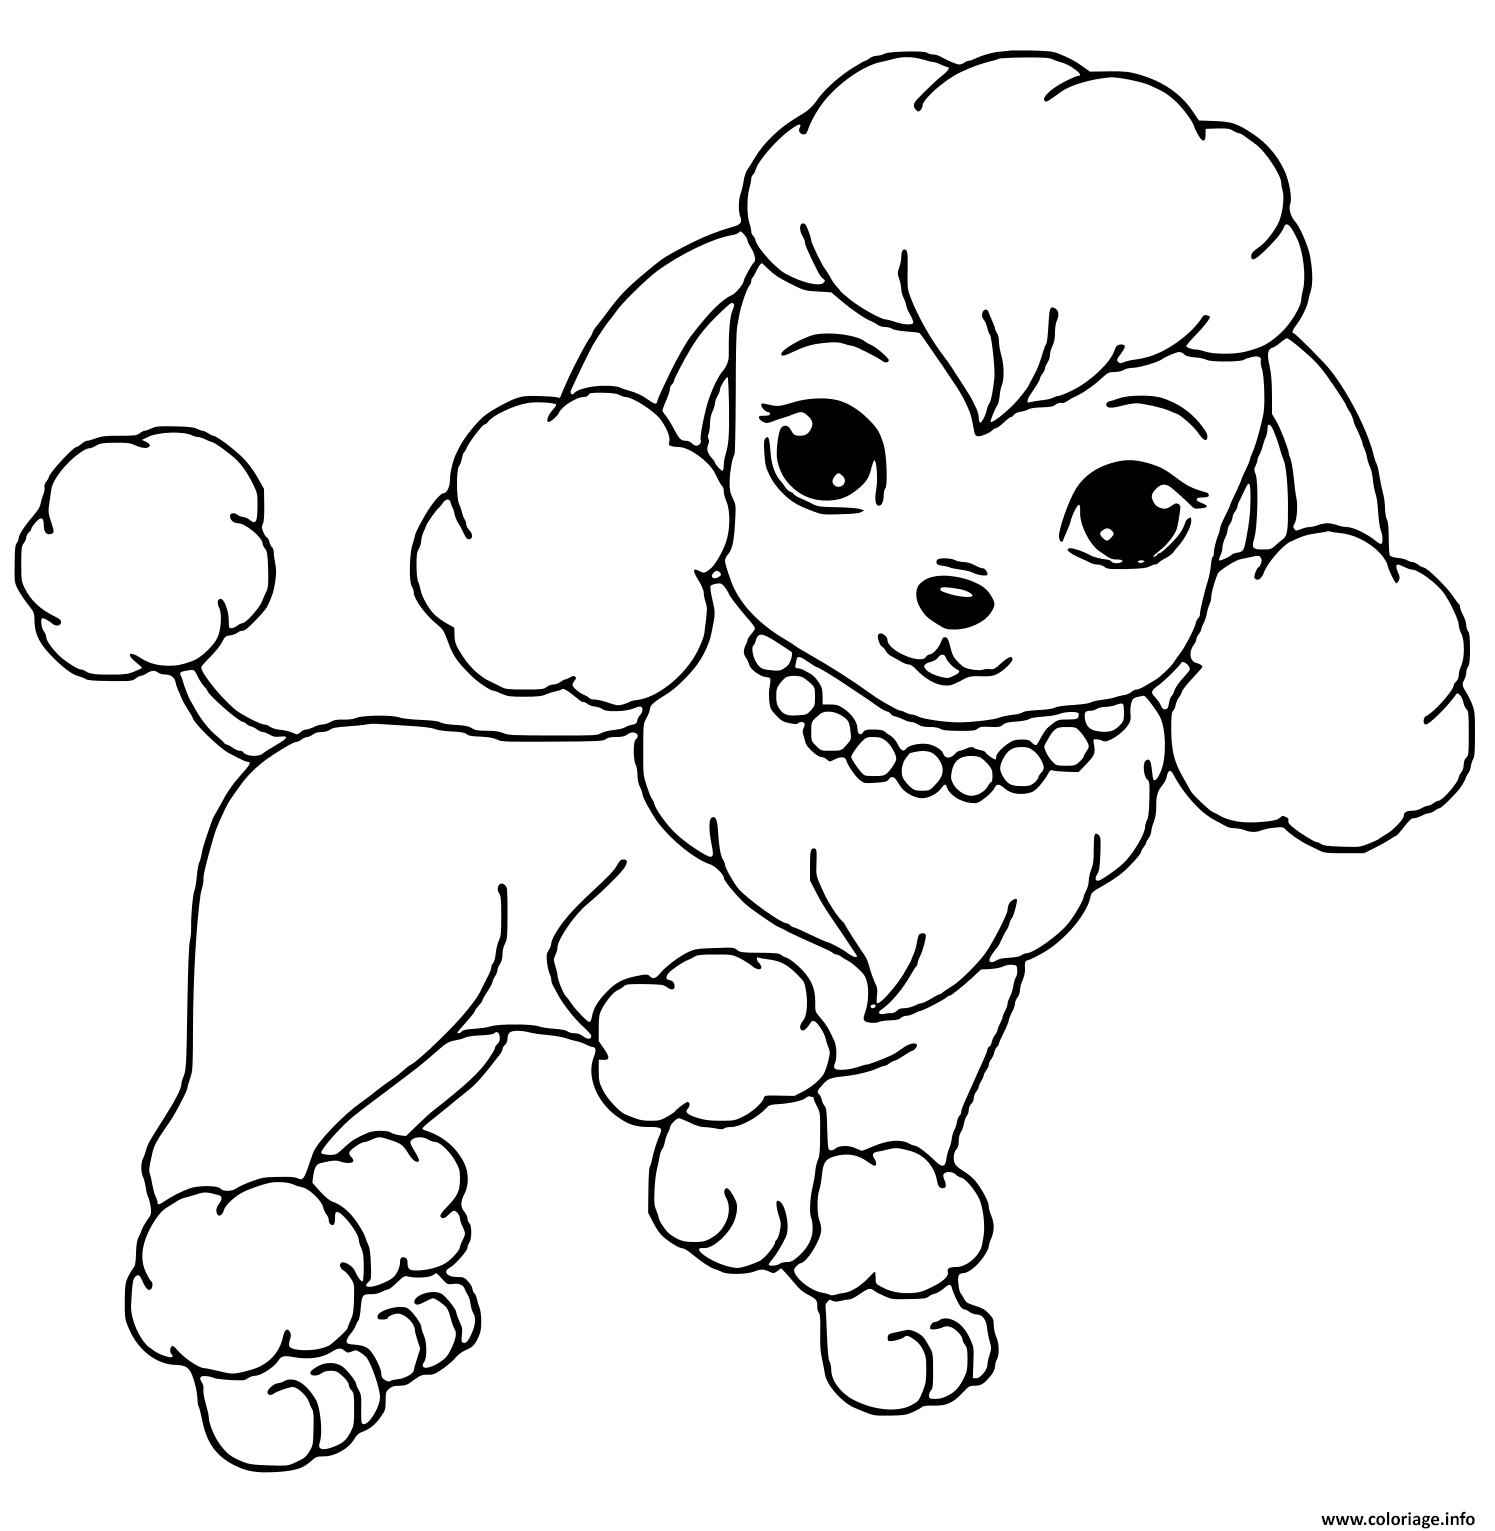 Coloriage Bébé Chien / coloriage de bébé chien trop mignon